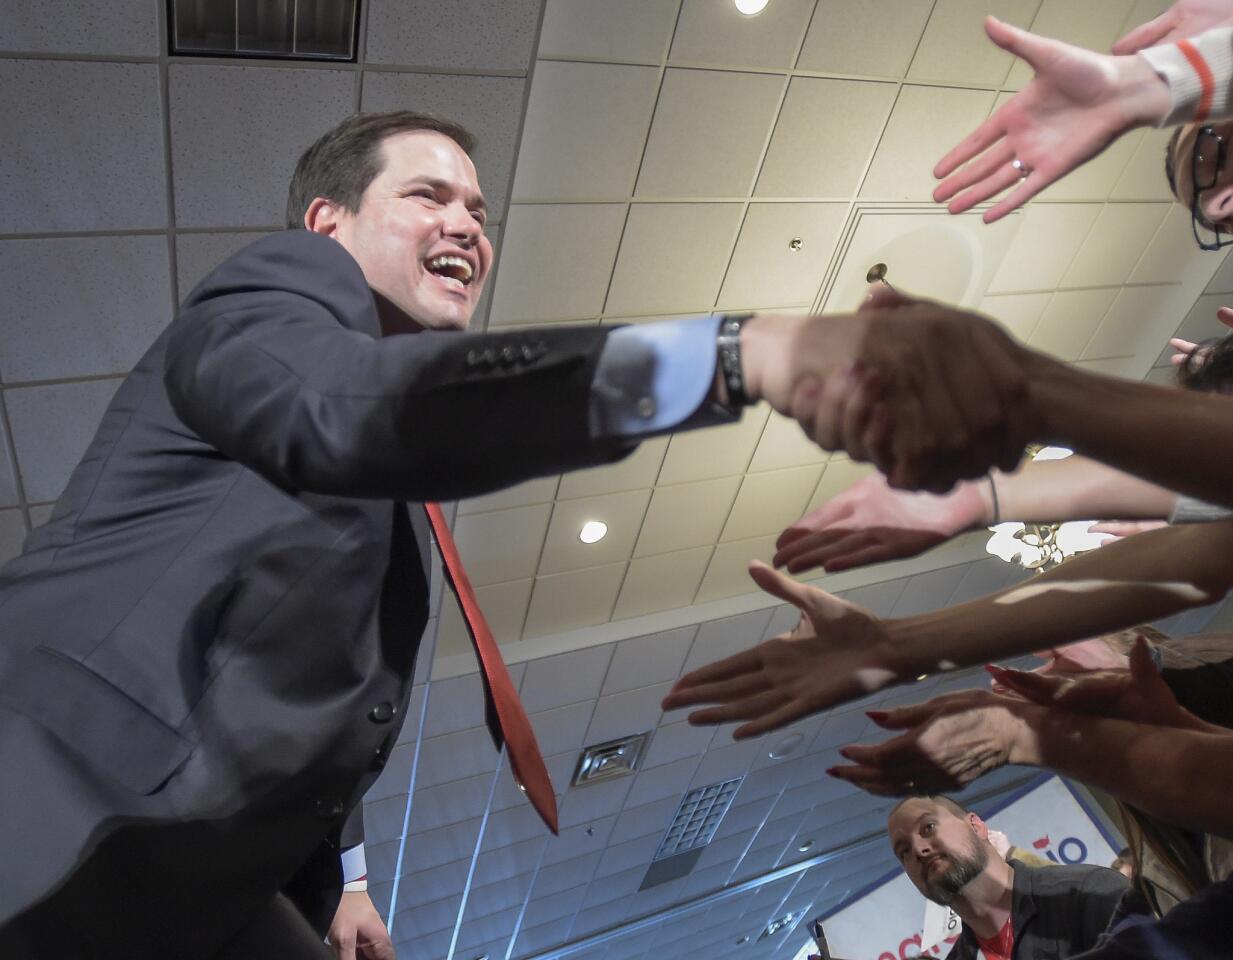 Sen. Marco Rubio campaigns in Minnesota